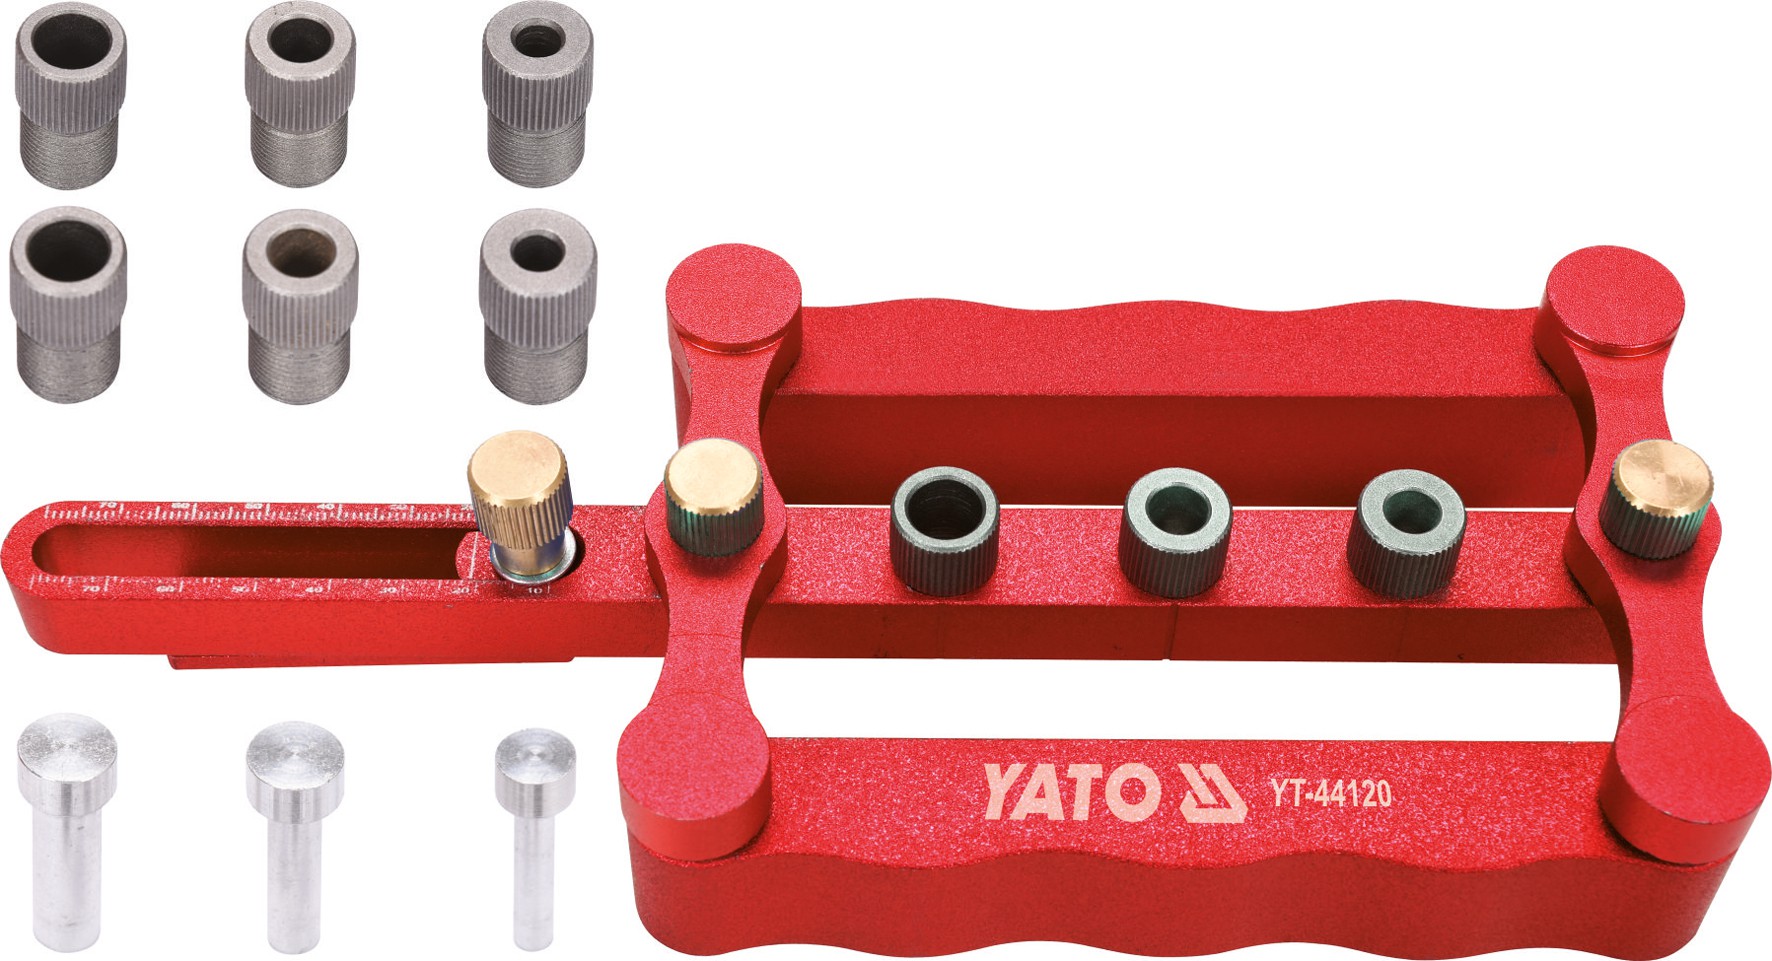 Пристрій для кілкових сполучень Yato з Ø 6, 8, 10 мм, 17- 50 мм